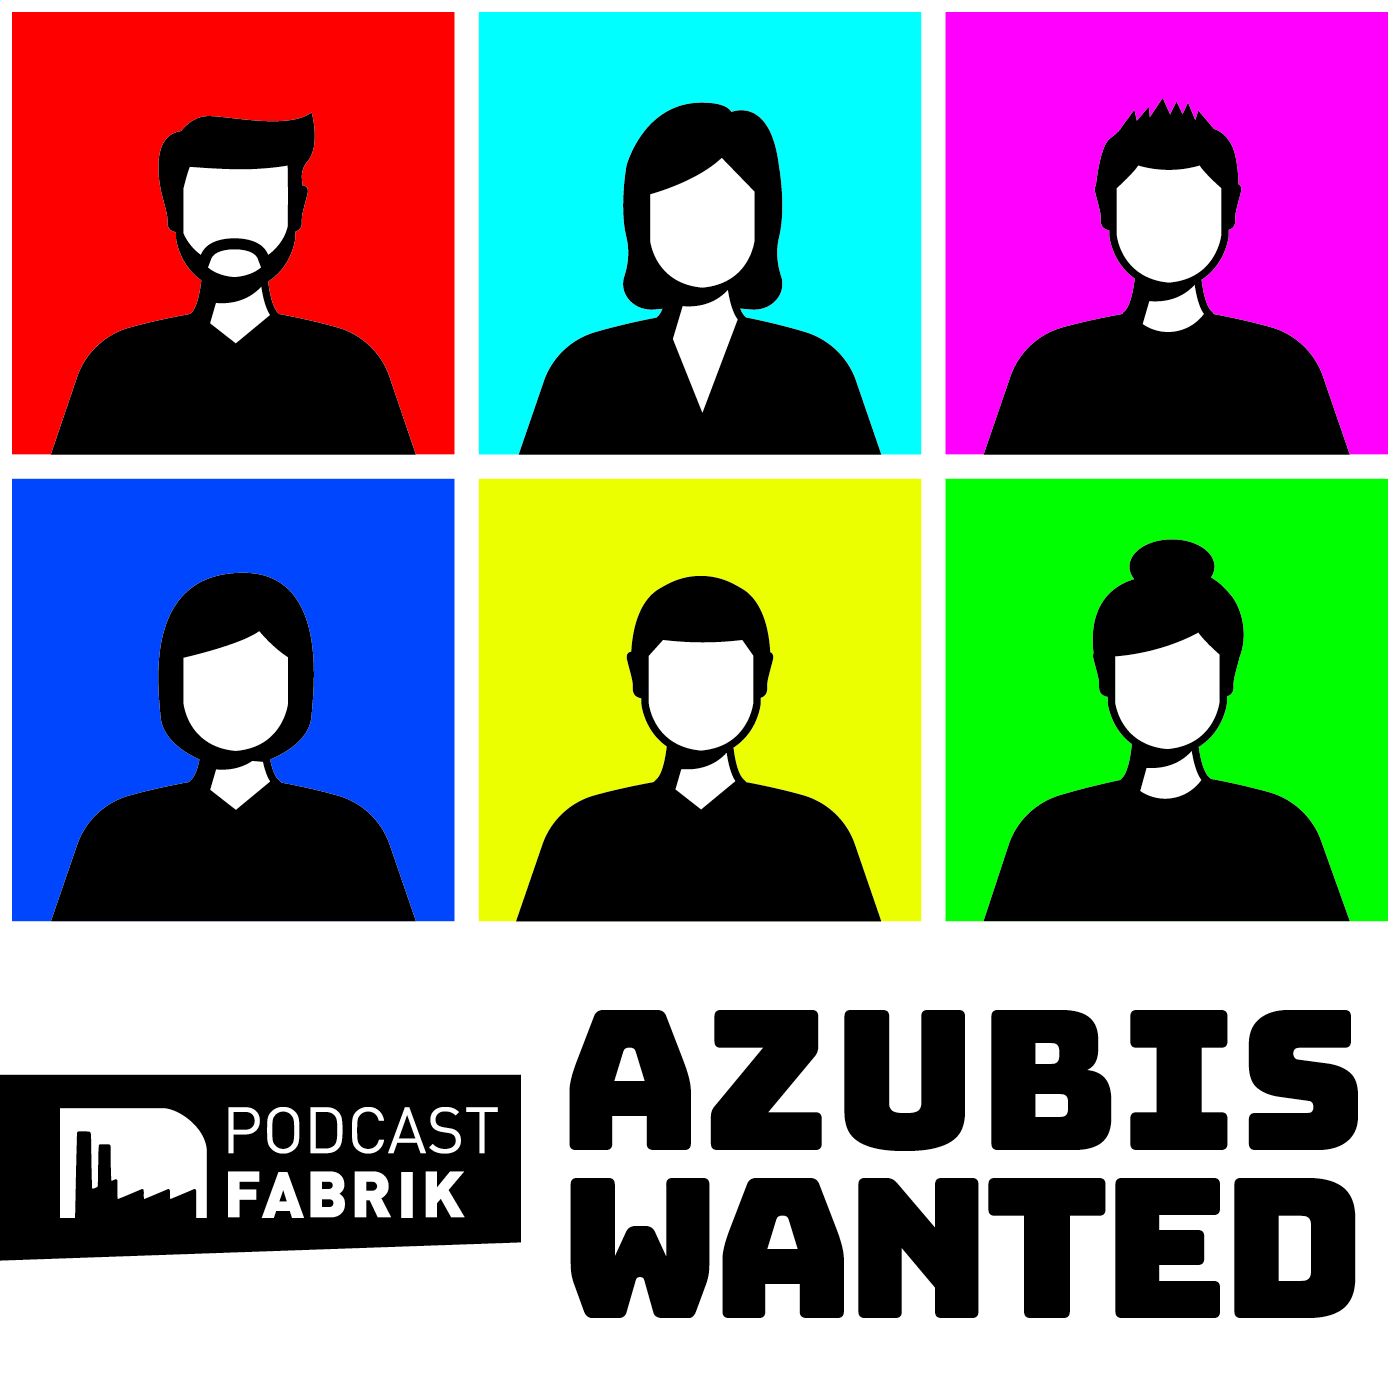 Azubis wanted - Silhouetten von Personen auf bunten Kacheln